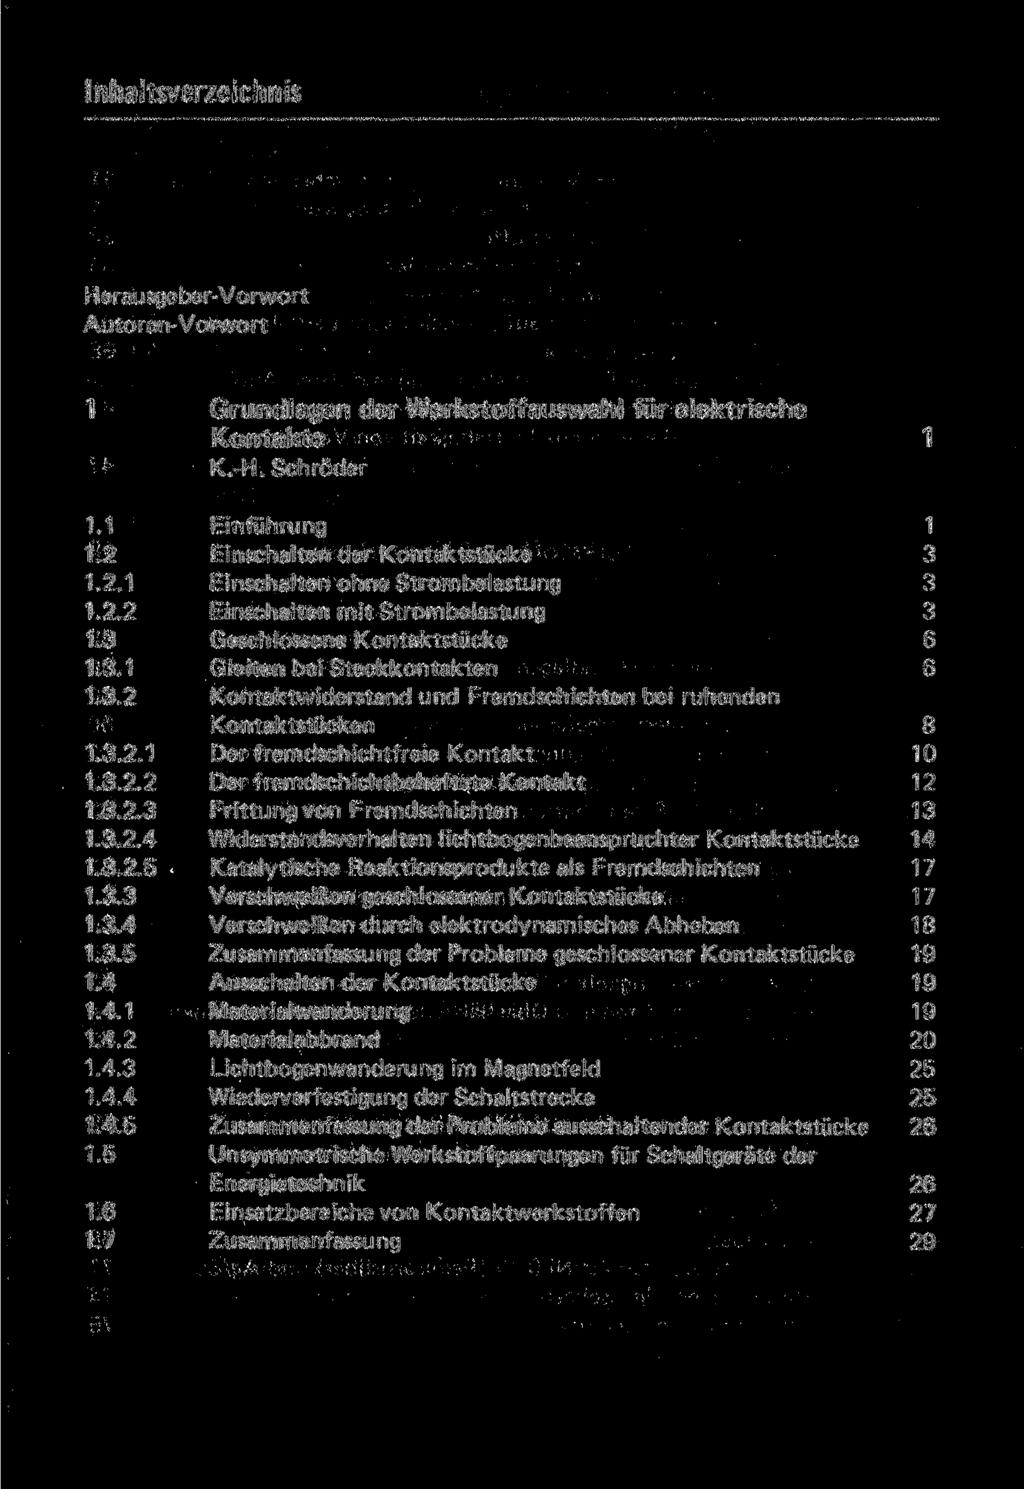 Inhaltsverzeichnis Herausgeber-Vorwort Autoren-Vorwort 1 Grundlagen der Werkstoffauswahl für elektrische Kontakte 1 K.-H. Schröder 1.1 1.2 1.2.1 1.2.2 1.3 1.3.1 1.3.2 1.3.2.1 1.3.2.2 1.3.2.3 1.3.2.4 1.